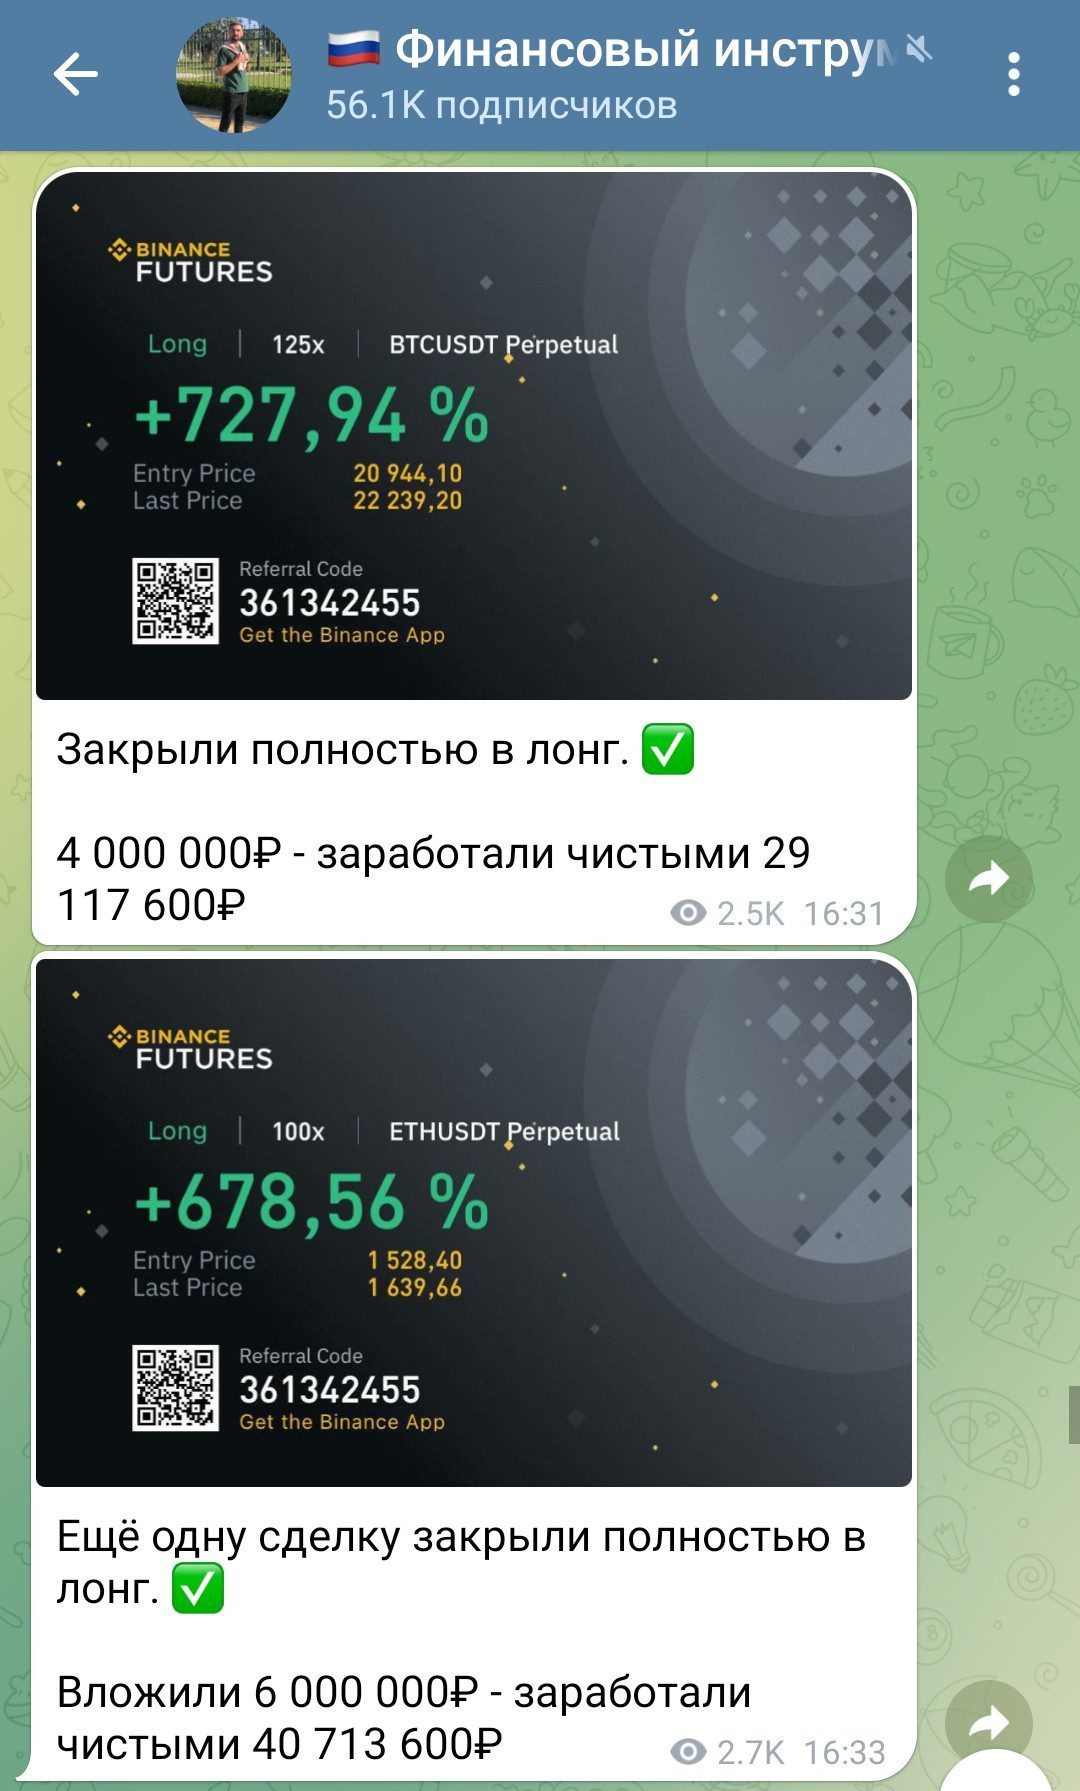 Телеграм канал Финансовый инструмент Пожидаев Игорь Викторович